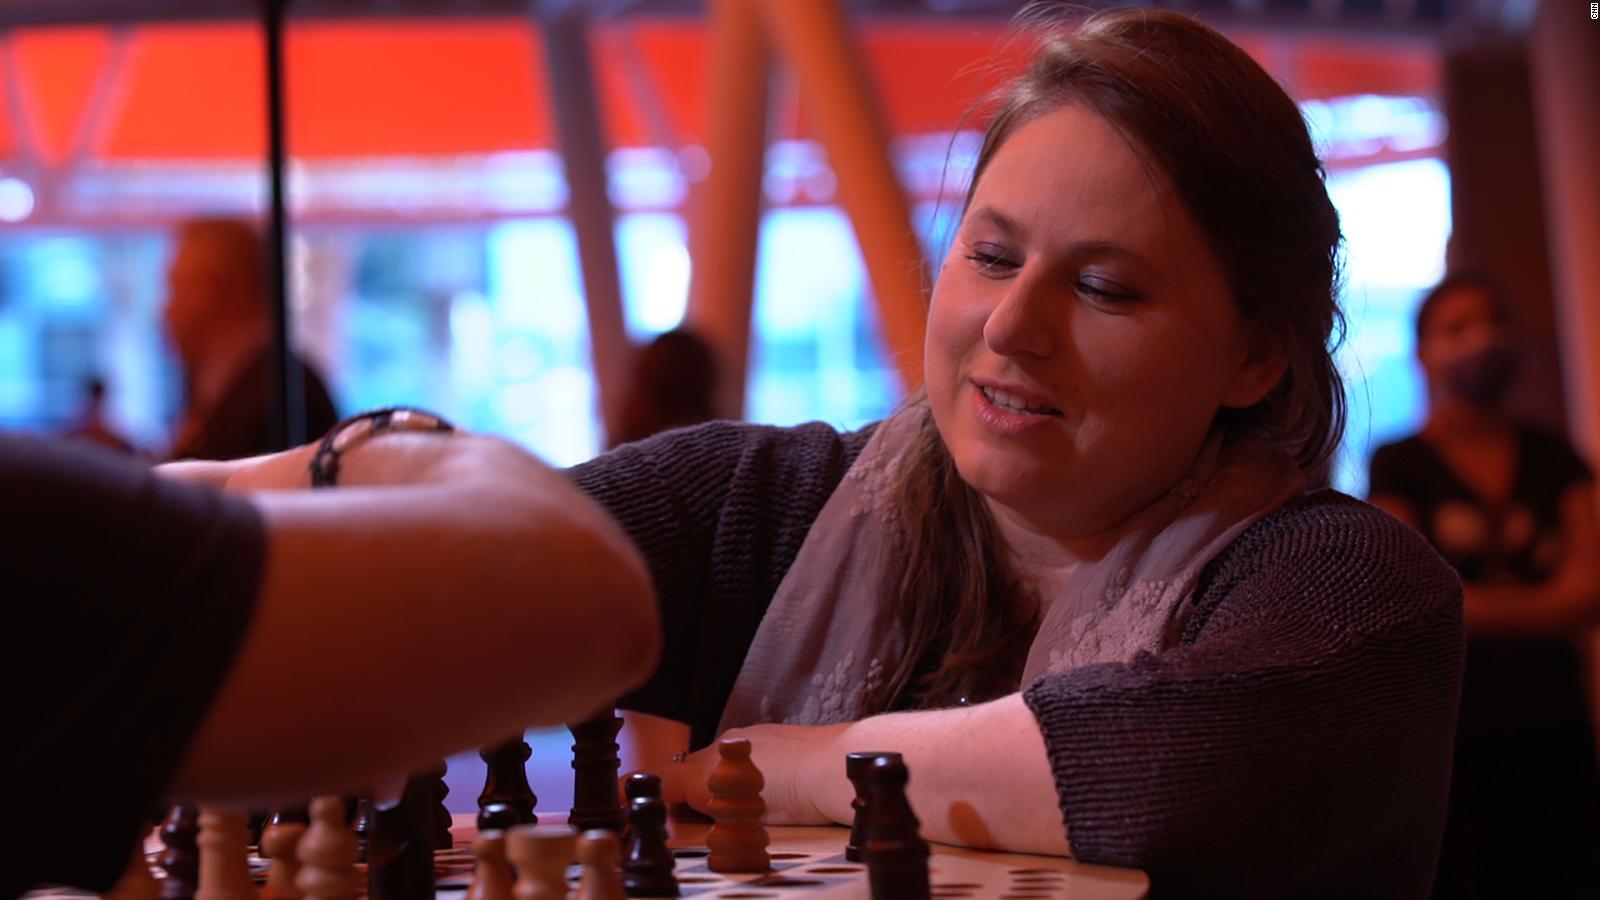 Judit Polgár es una ajedrecista húngara ya retirada, considerada la mejor  jugadora femenina de ajedrez de la historia. Batió el récord de…